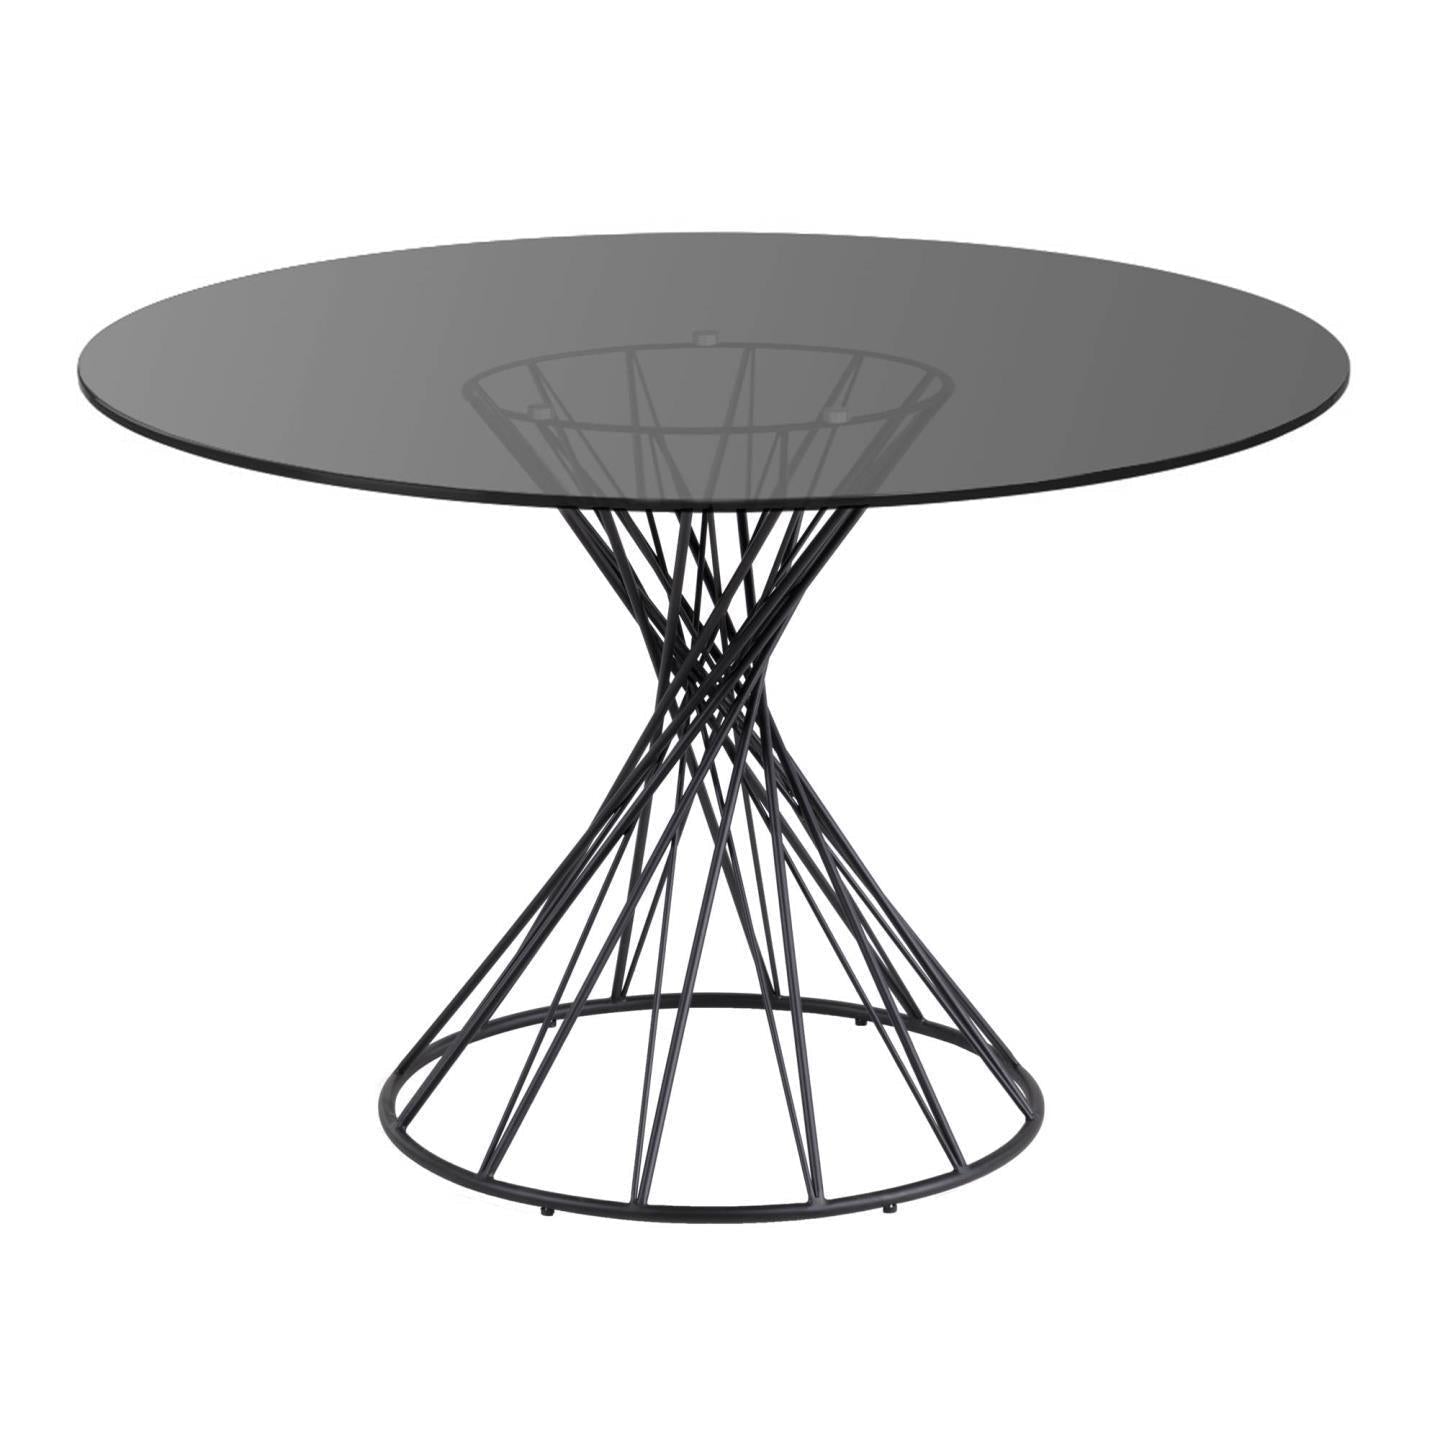 Kave Home Niut runder Tisch aus Glas und Stahlbeine mit schwarzem Finish Ø 120 cm Schwarz-CC1838C15 #CC1838C15